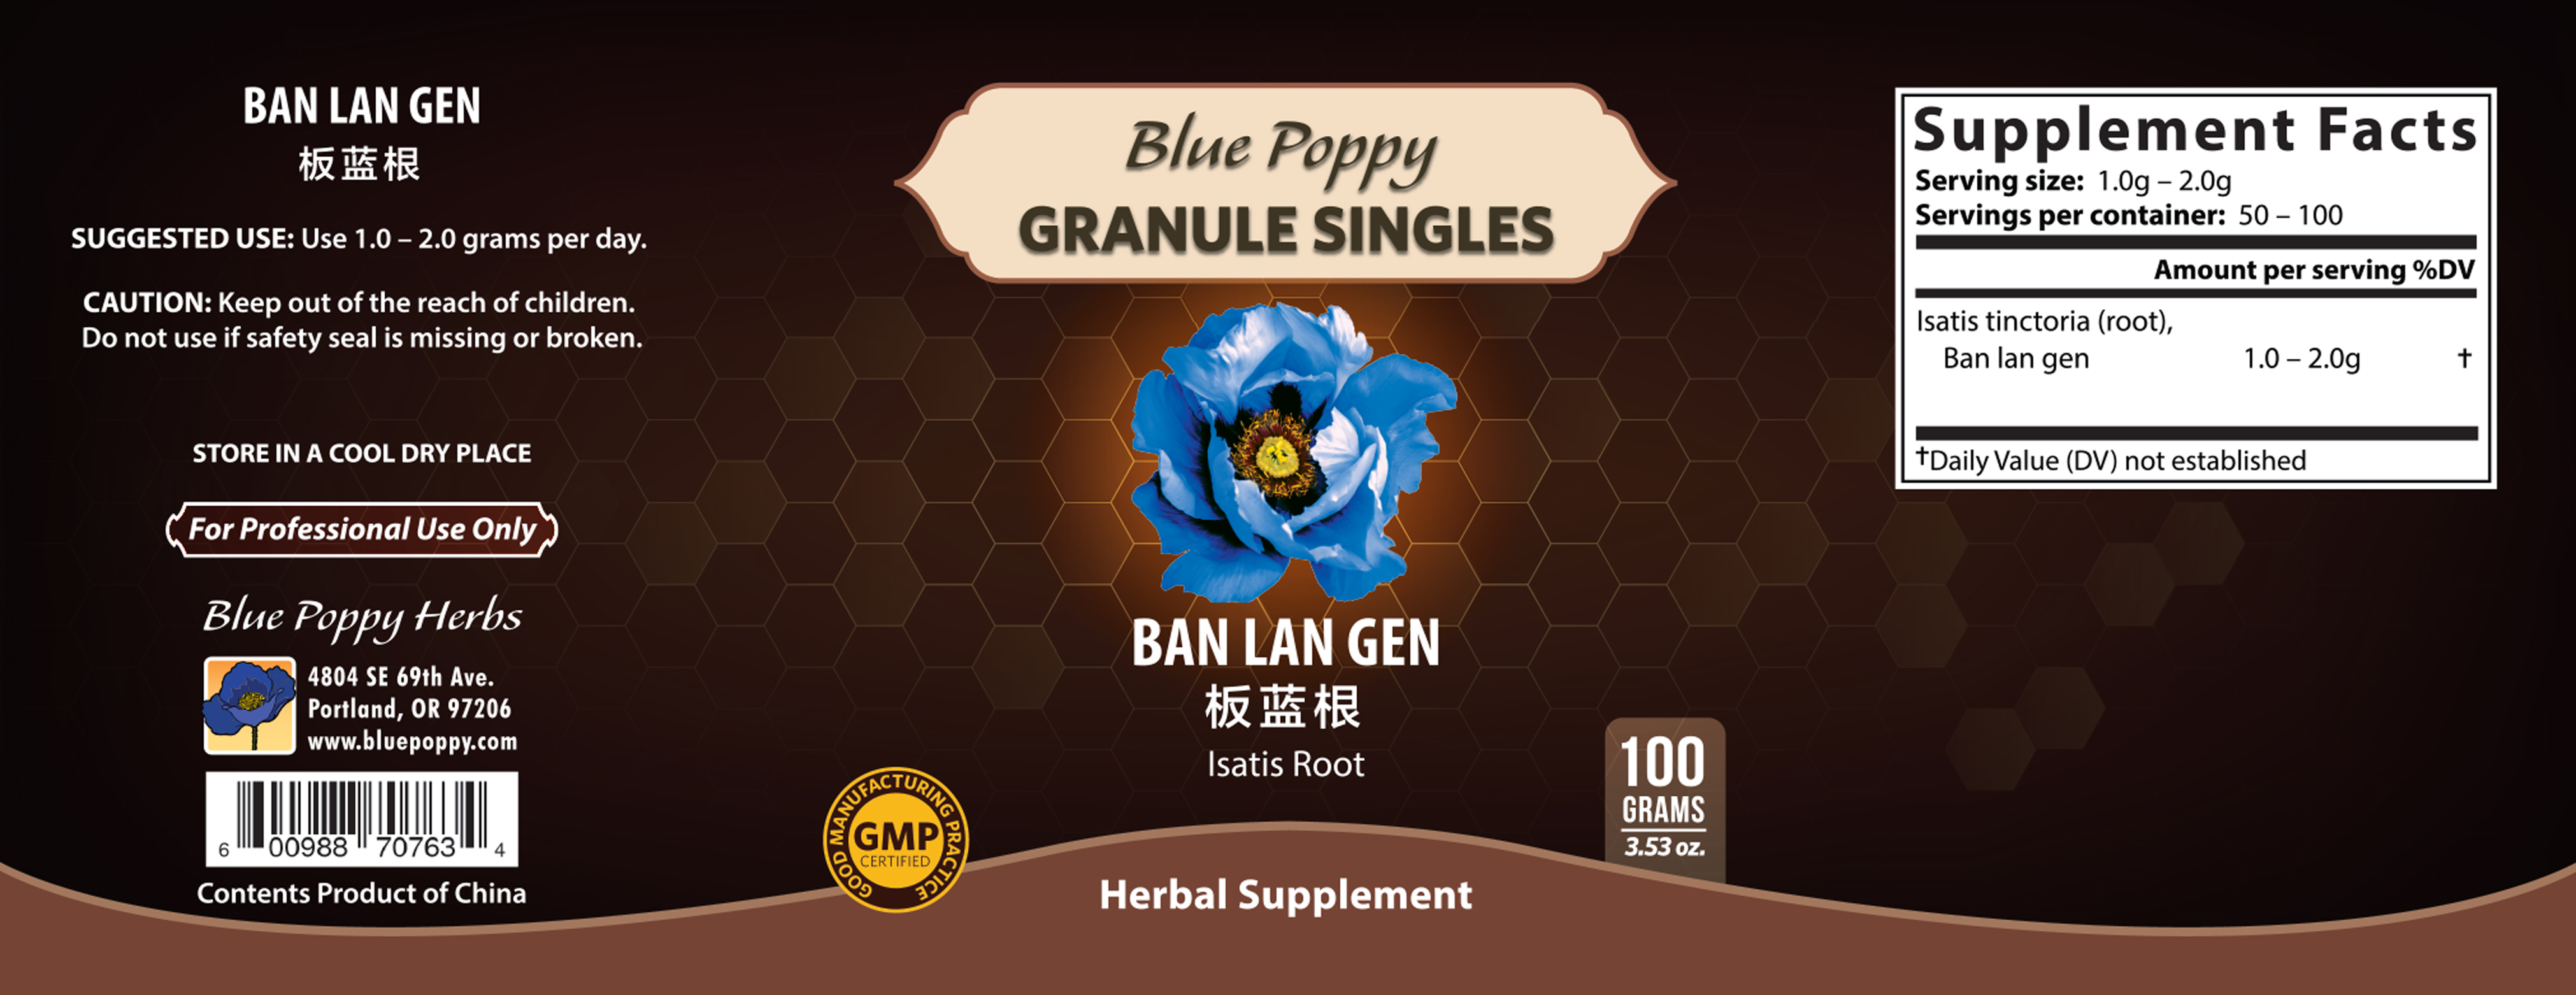 Ban Lan Gen Granules